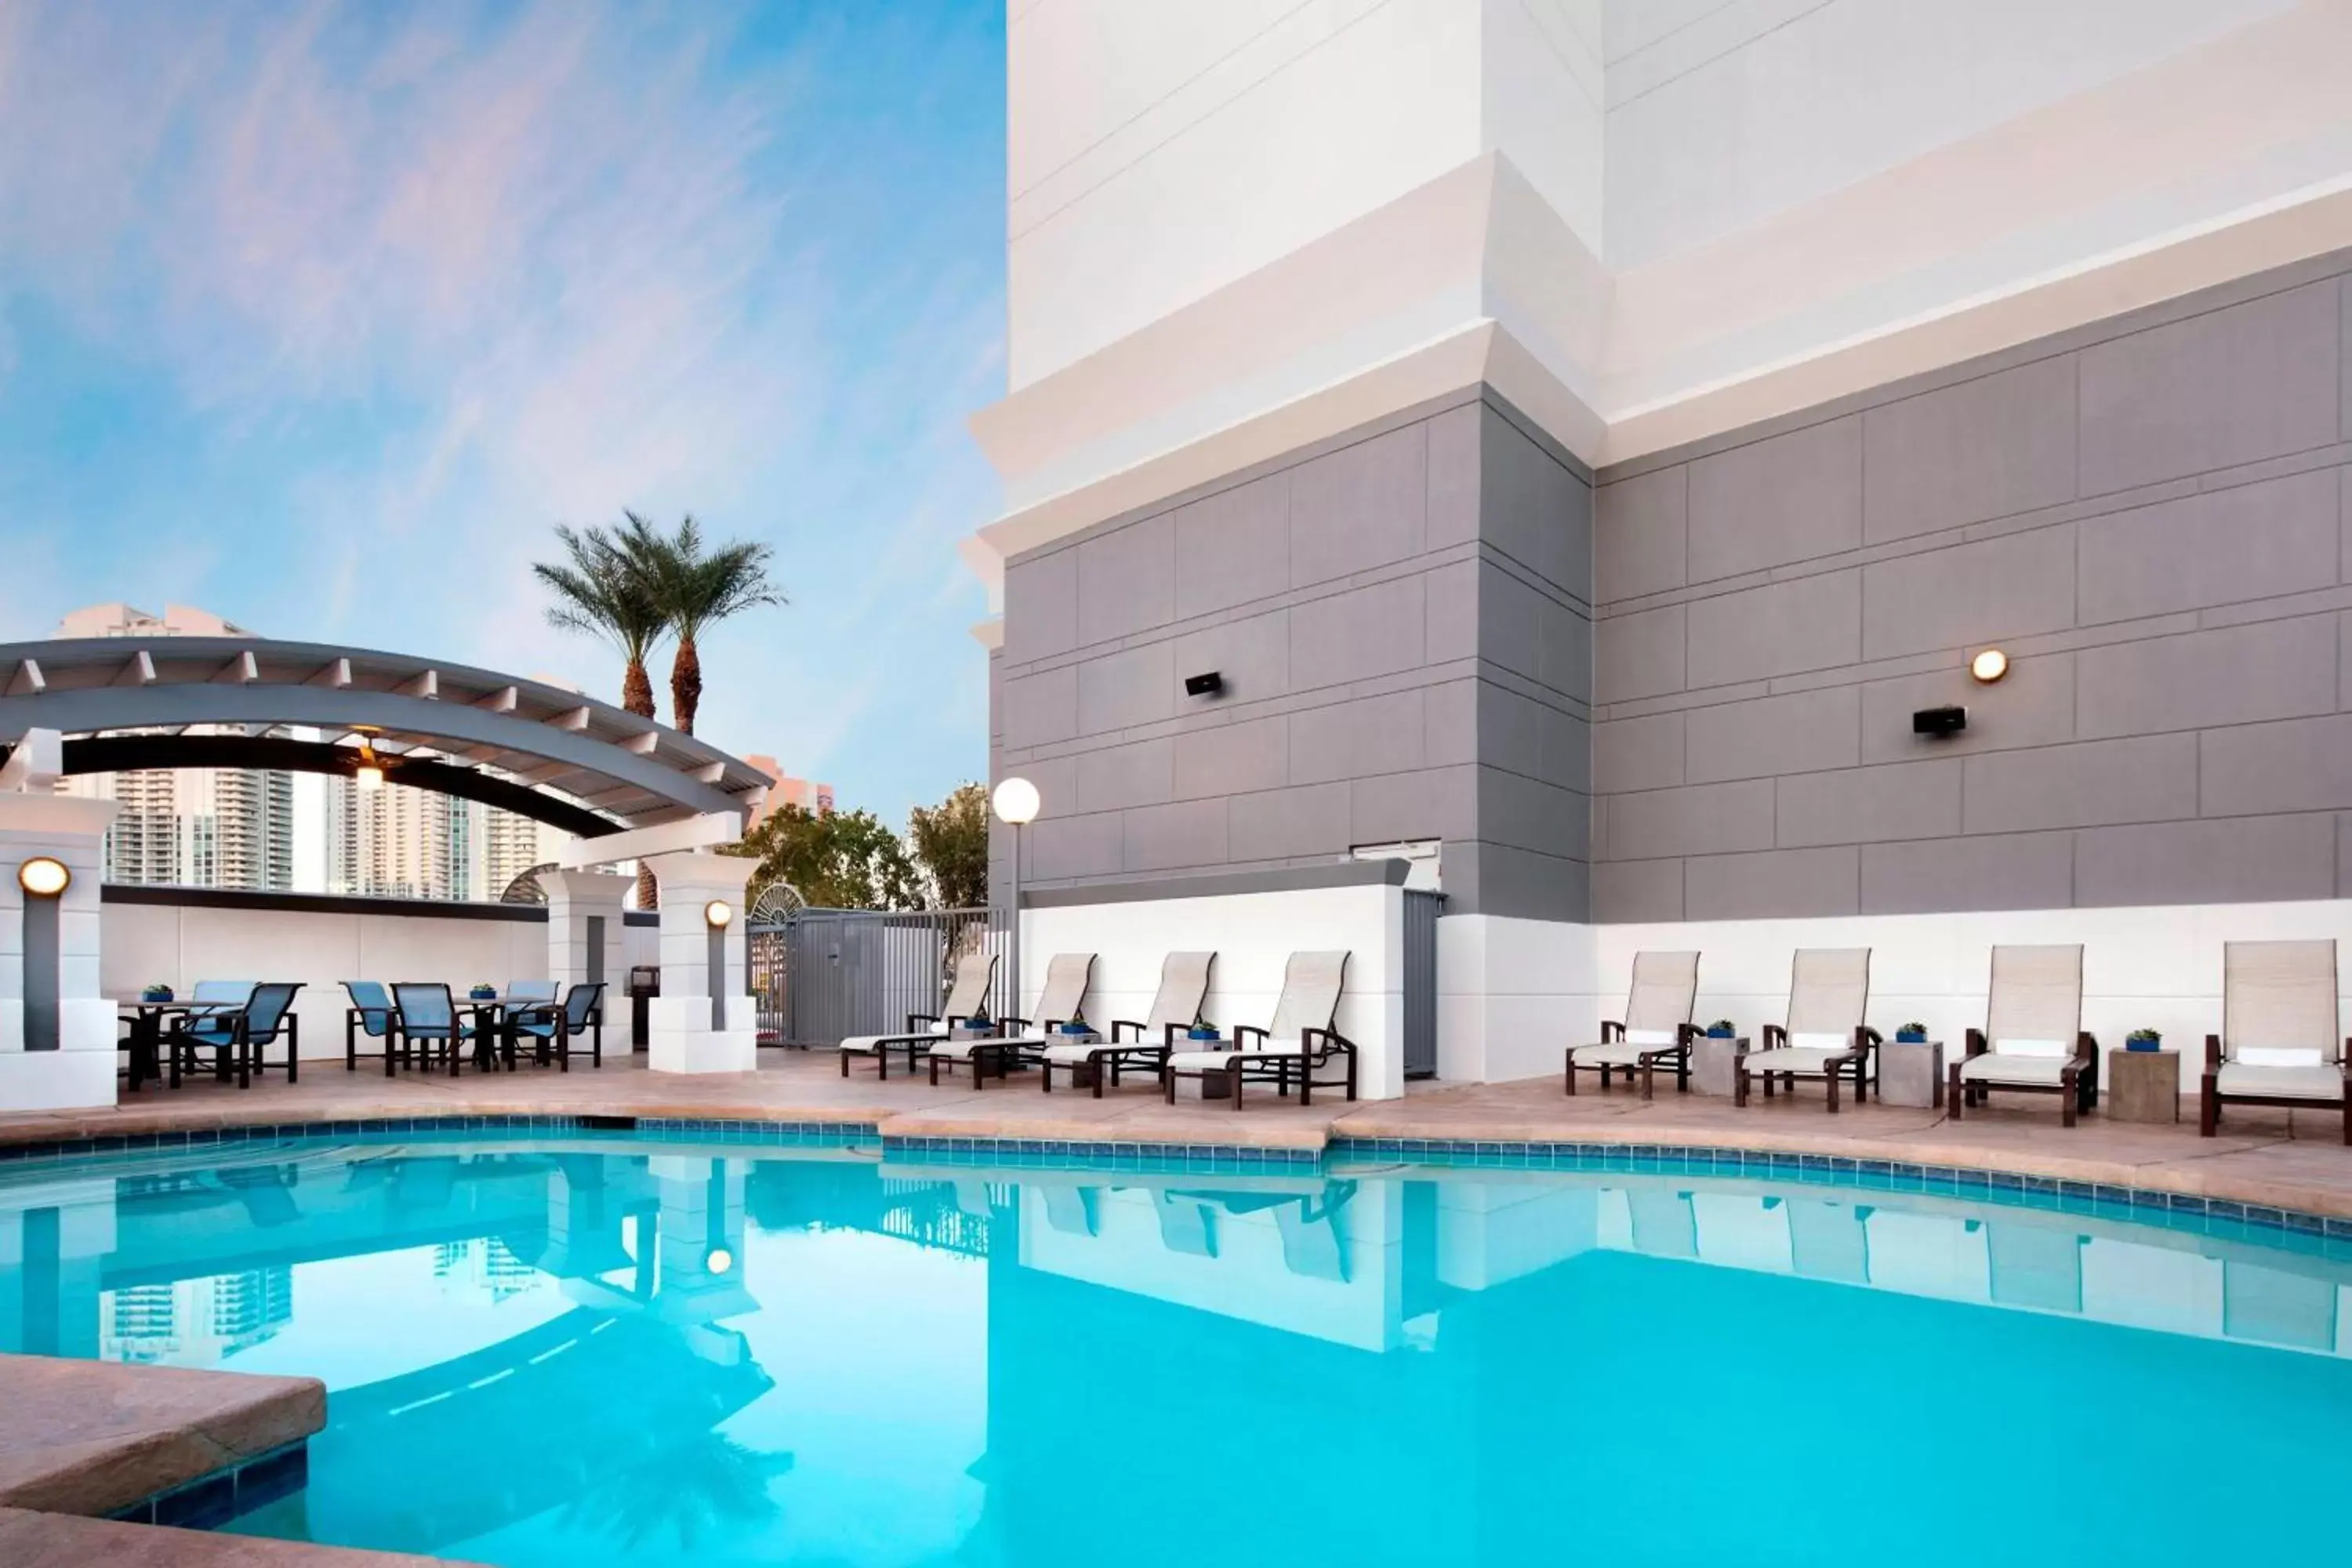 Swimming Pool in Las Vegas Marriott